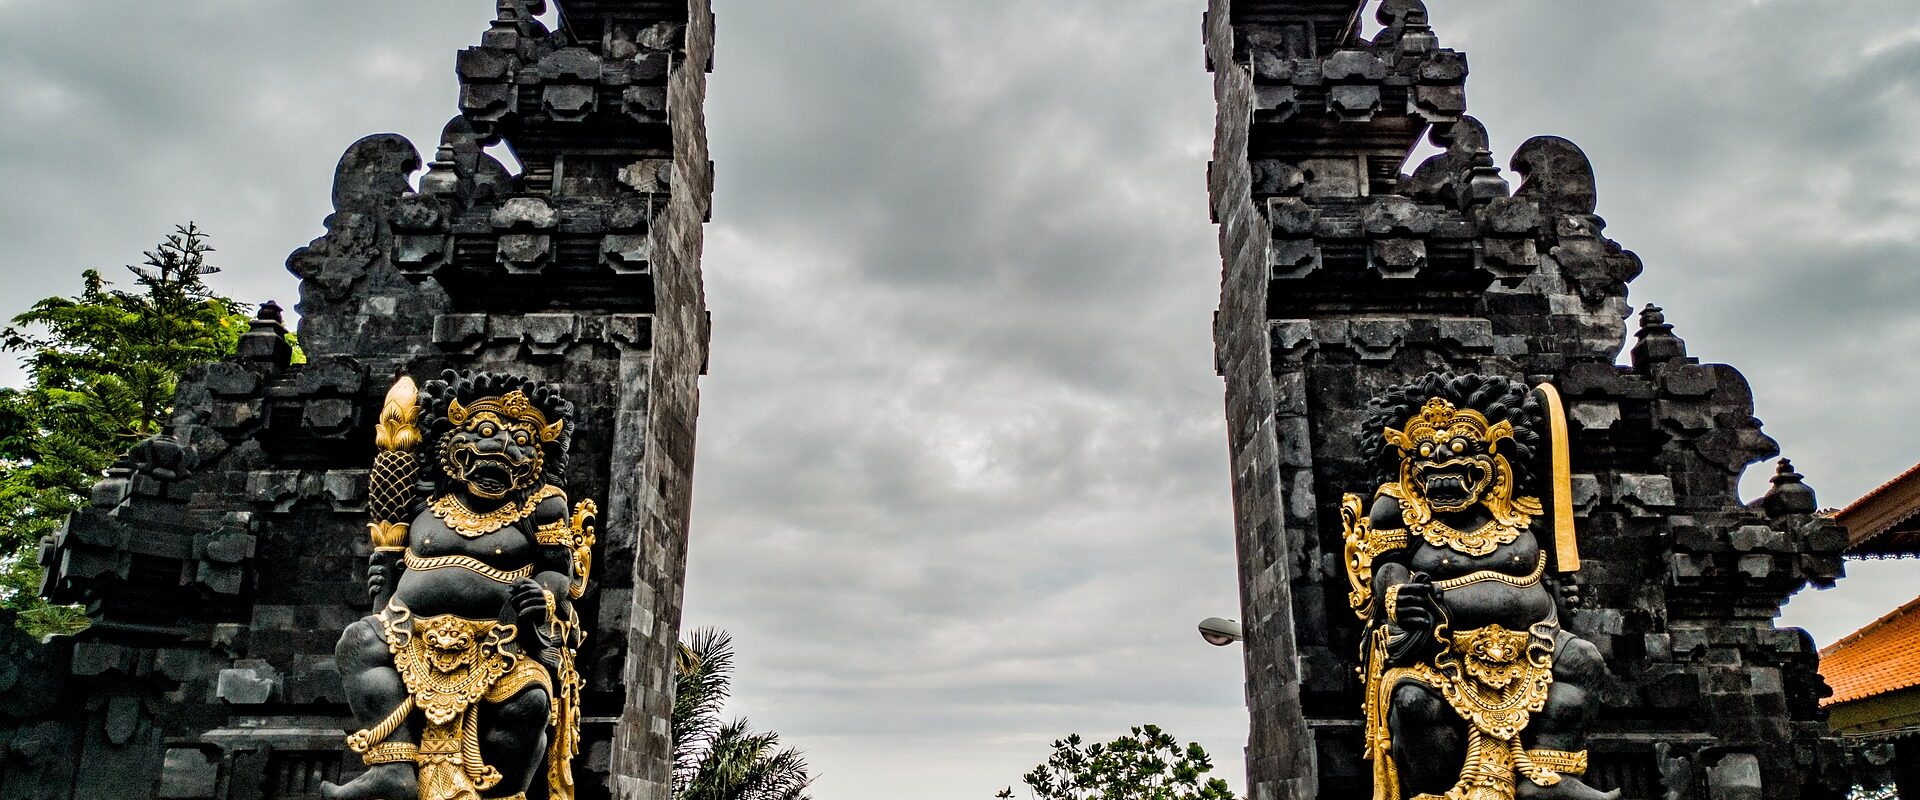 Temple Pura Tanah Lot à Bali en Indonésie